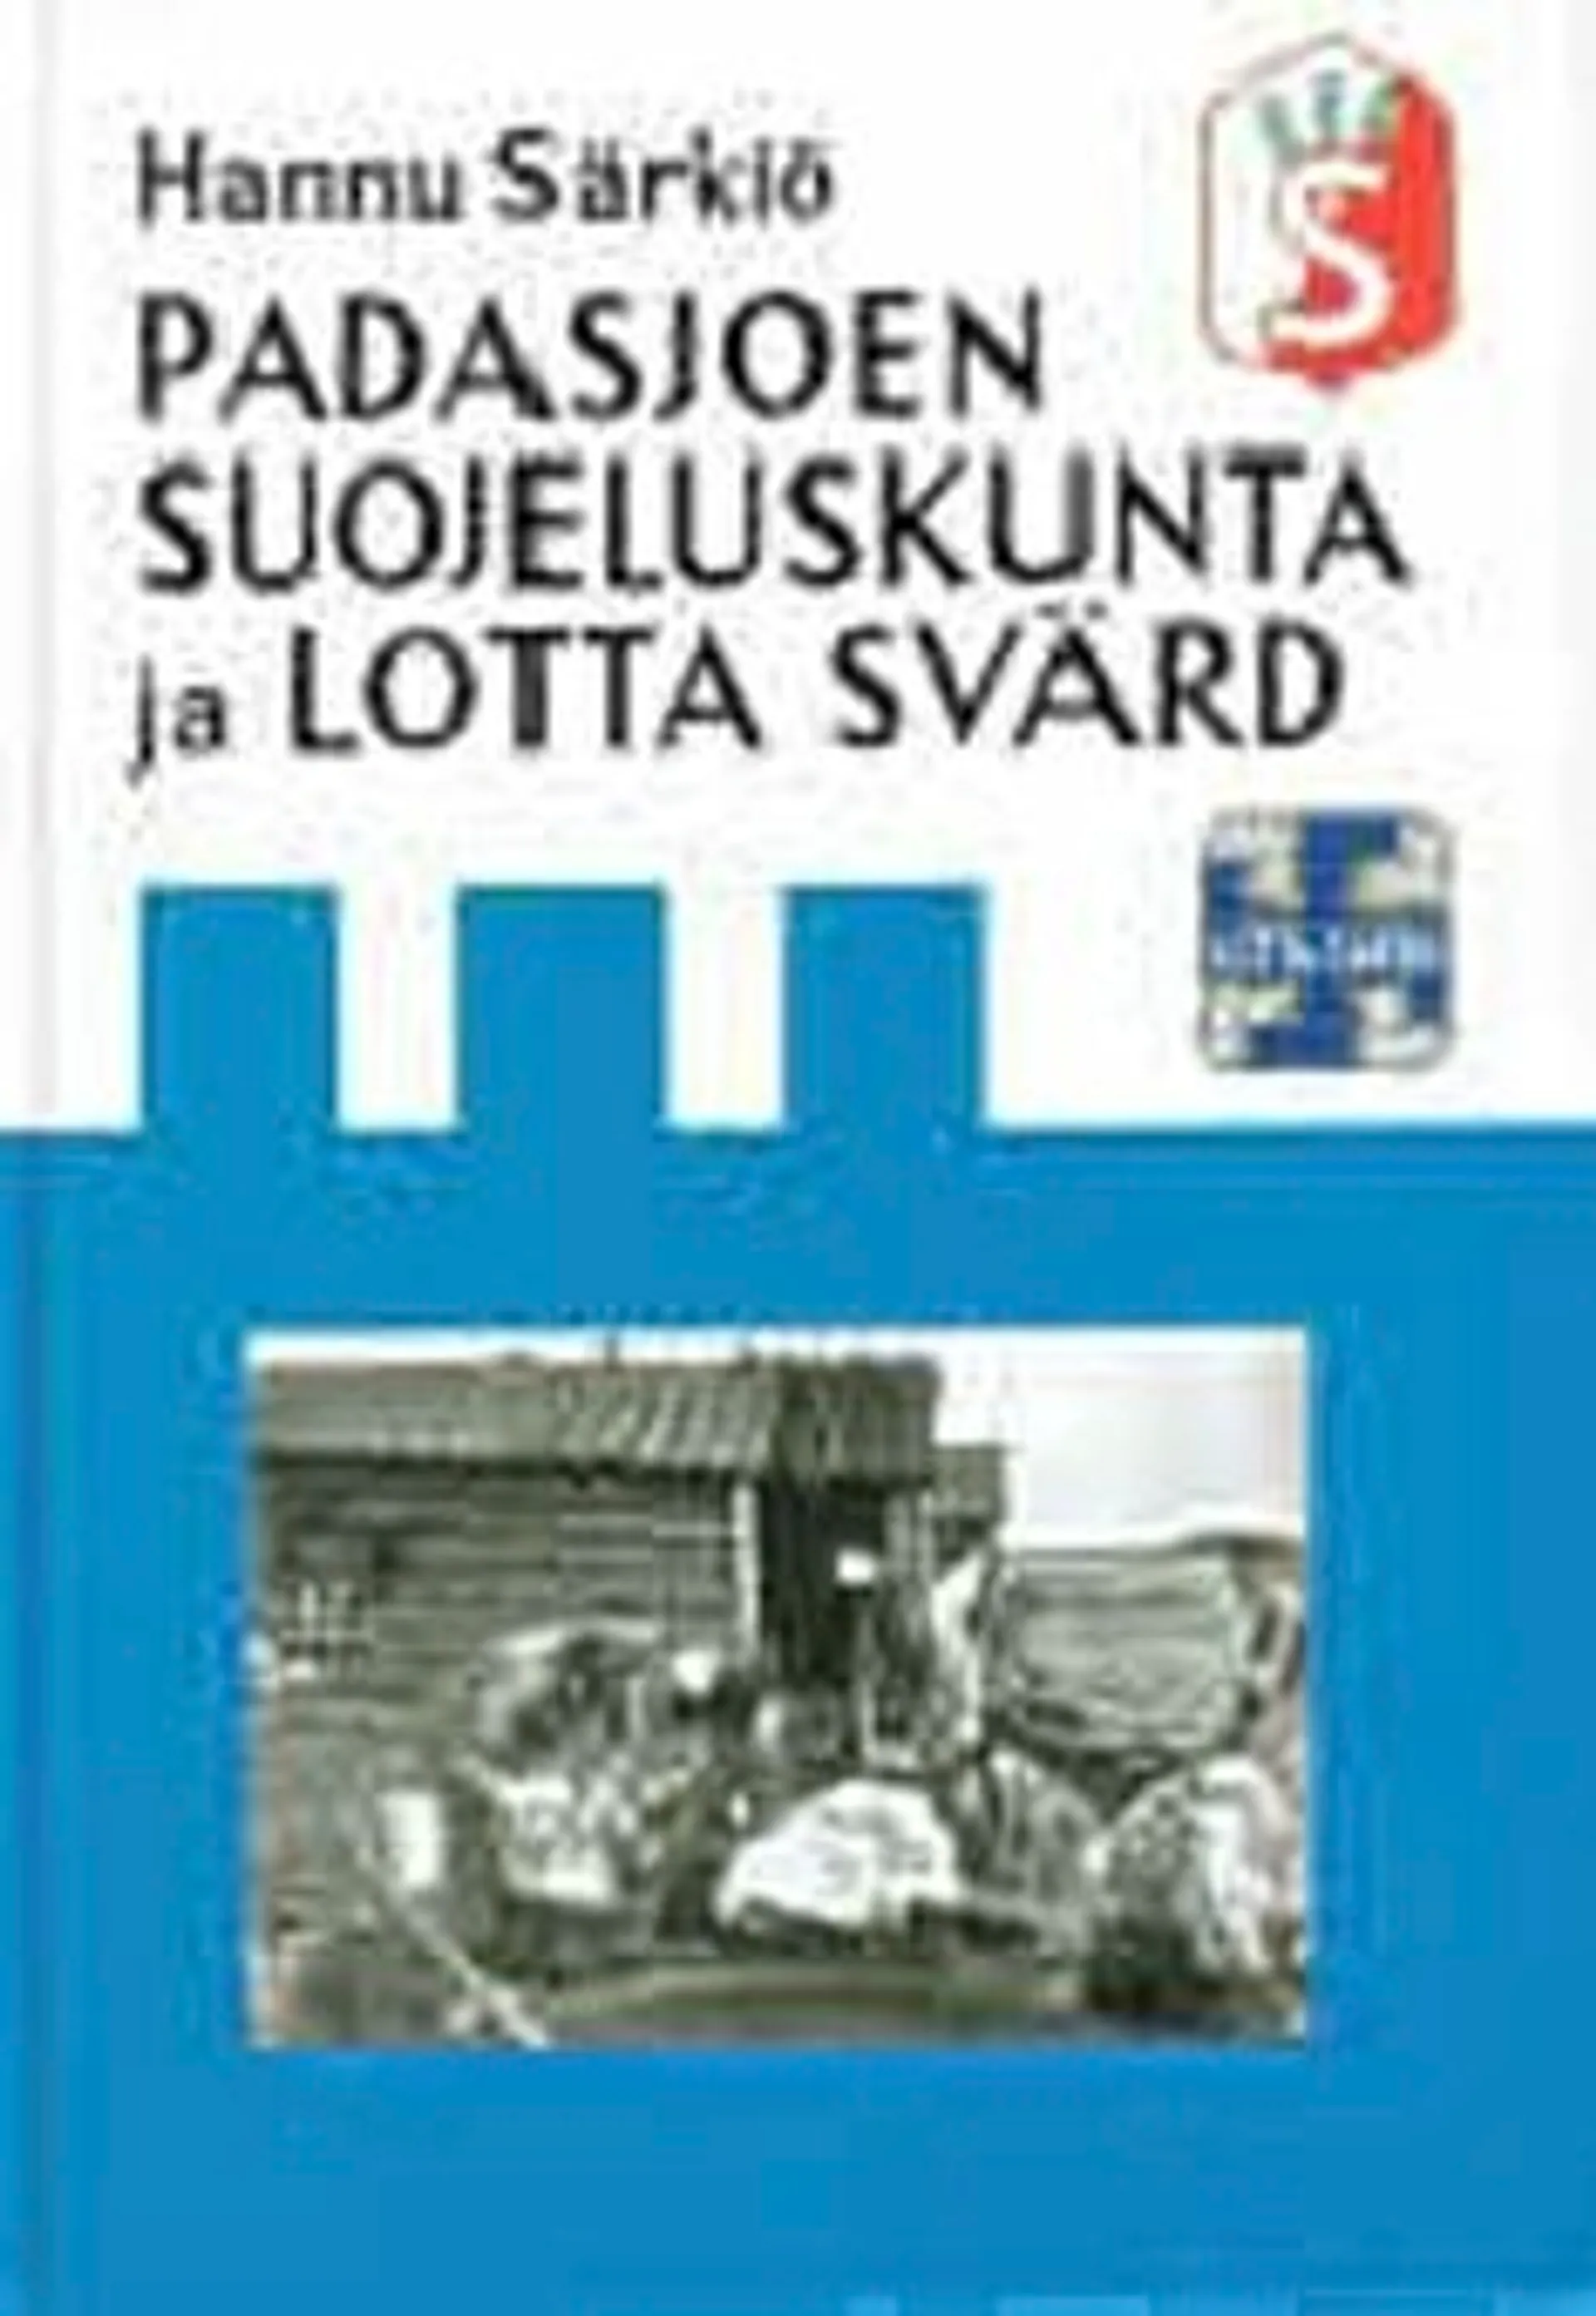 Särkiö, Padasjoen suojeluskunta ja Lotta Svärd 1918-1944